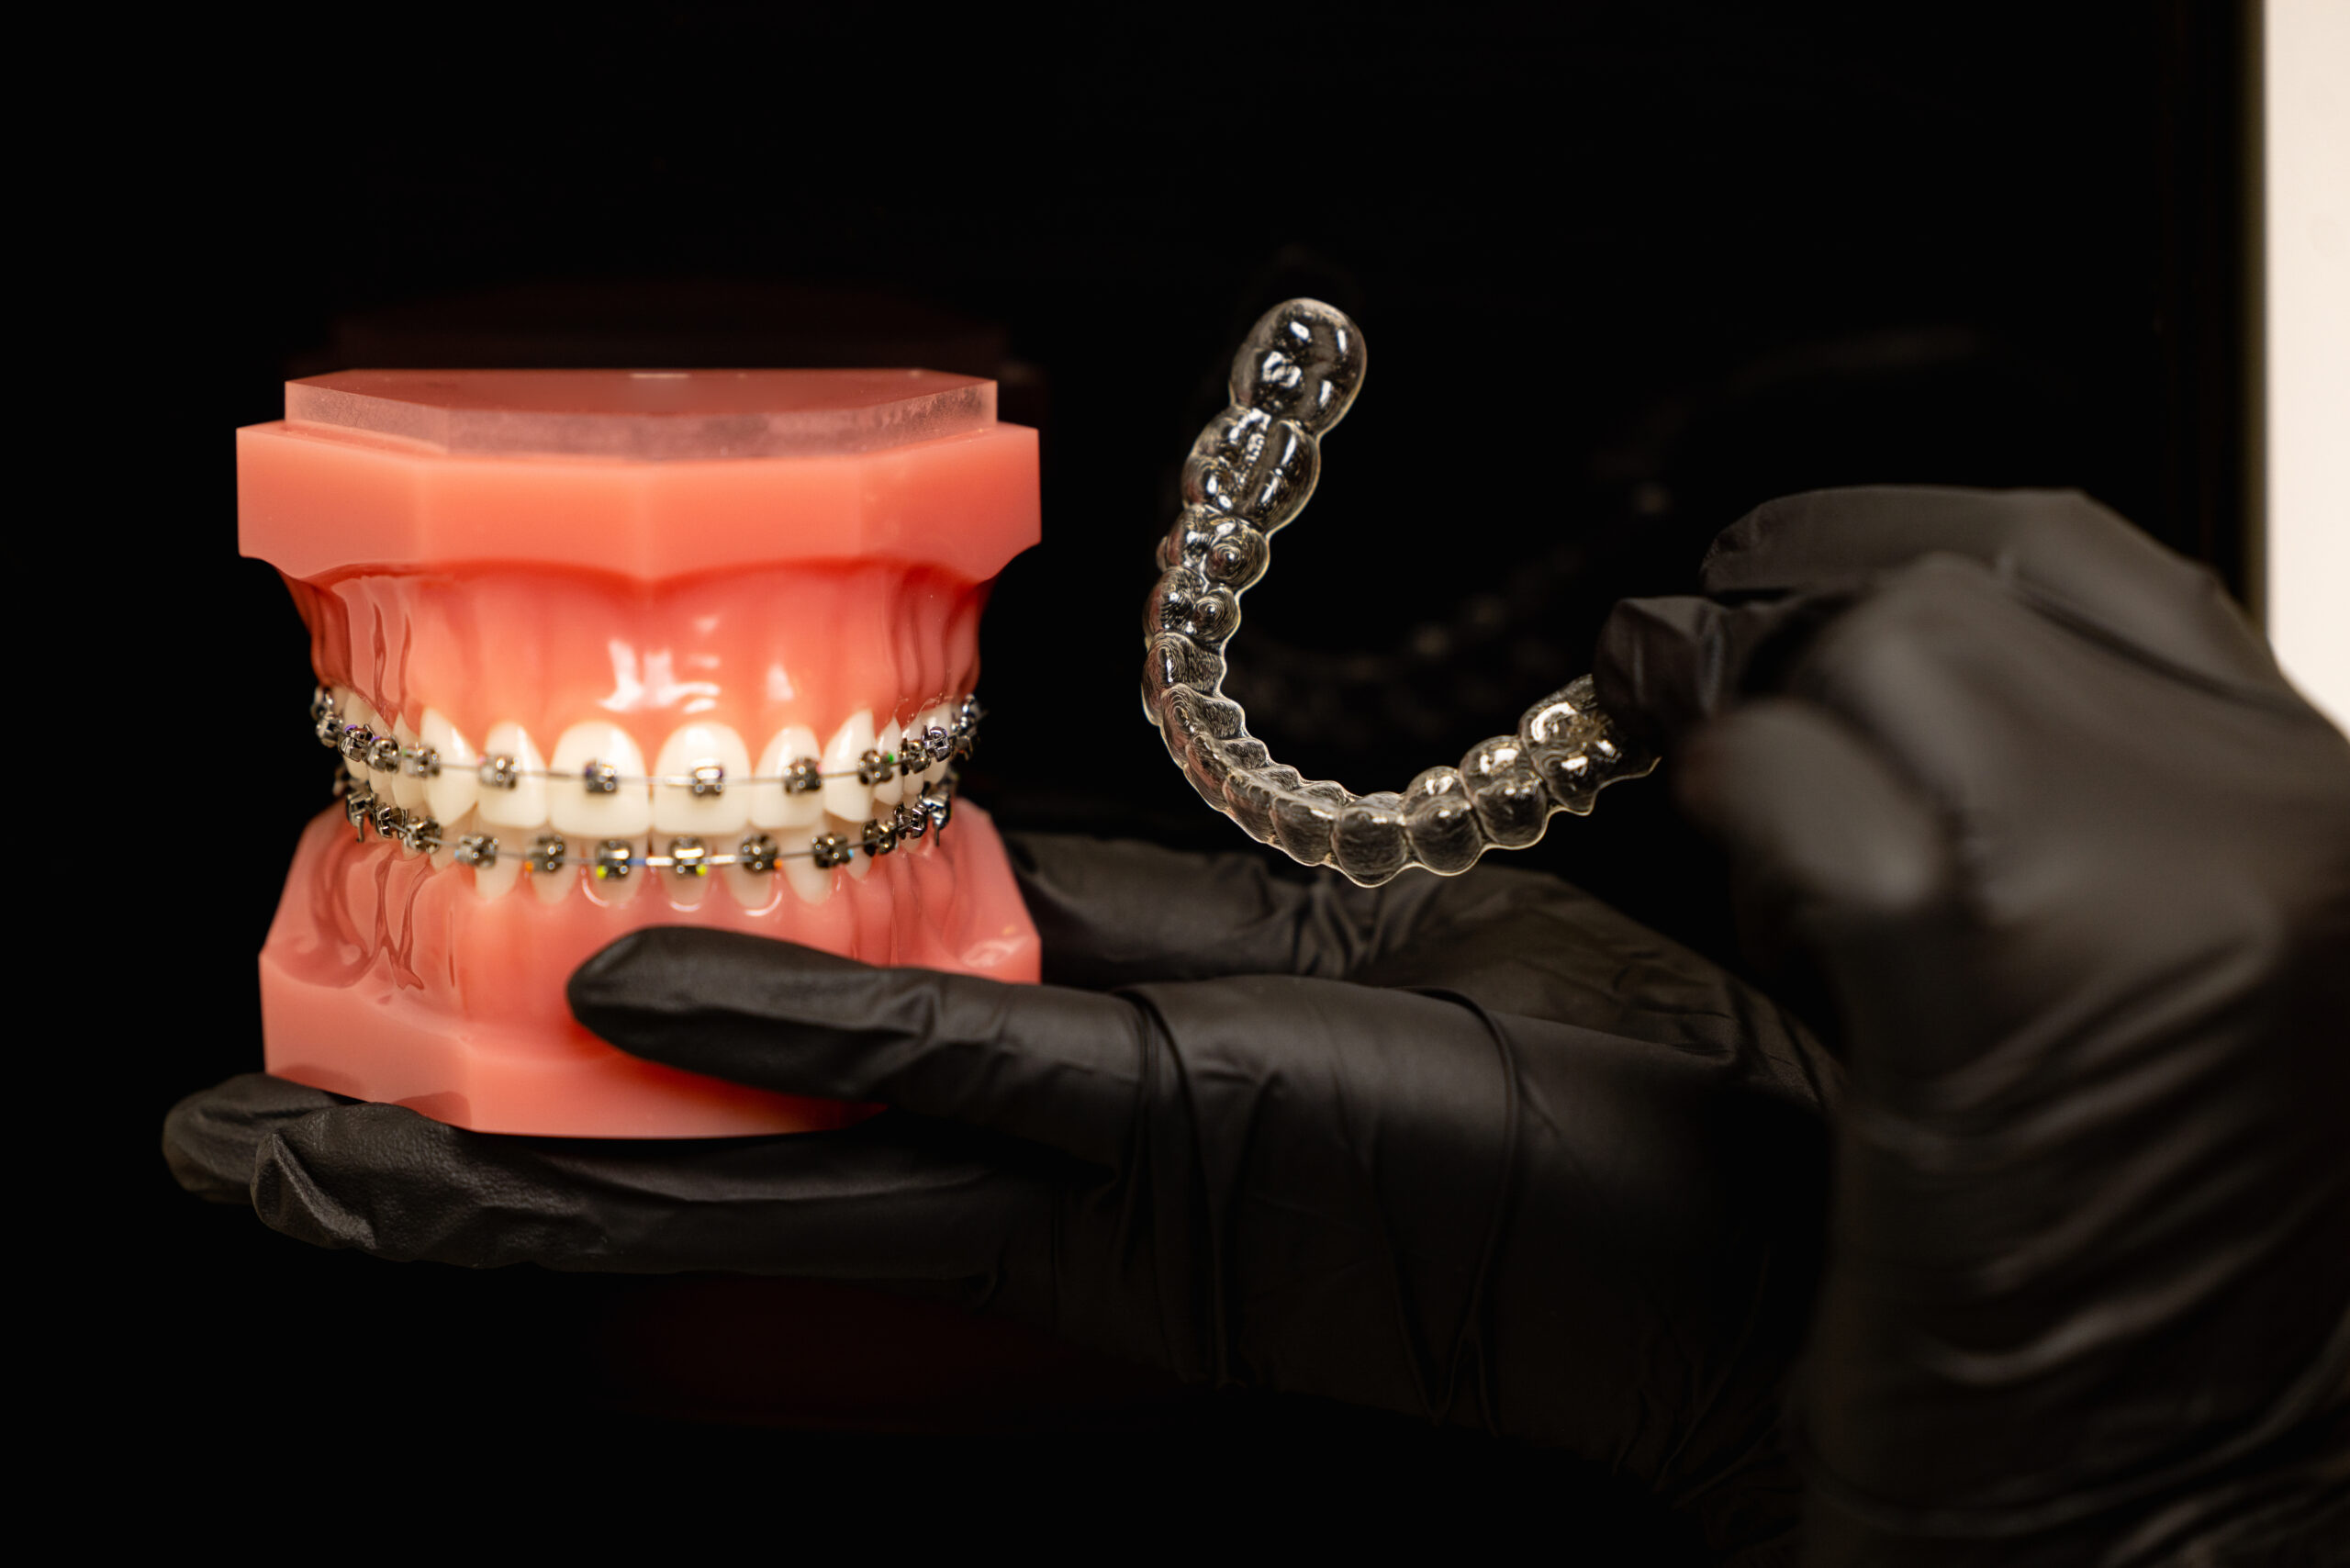 Sve o fiksnim ortodontskim aparatima – detaljan vodič